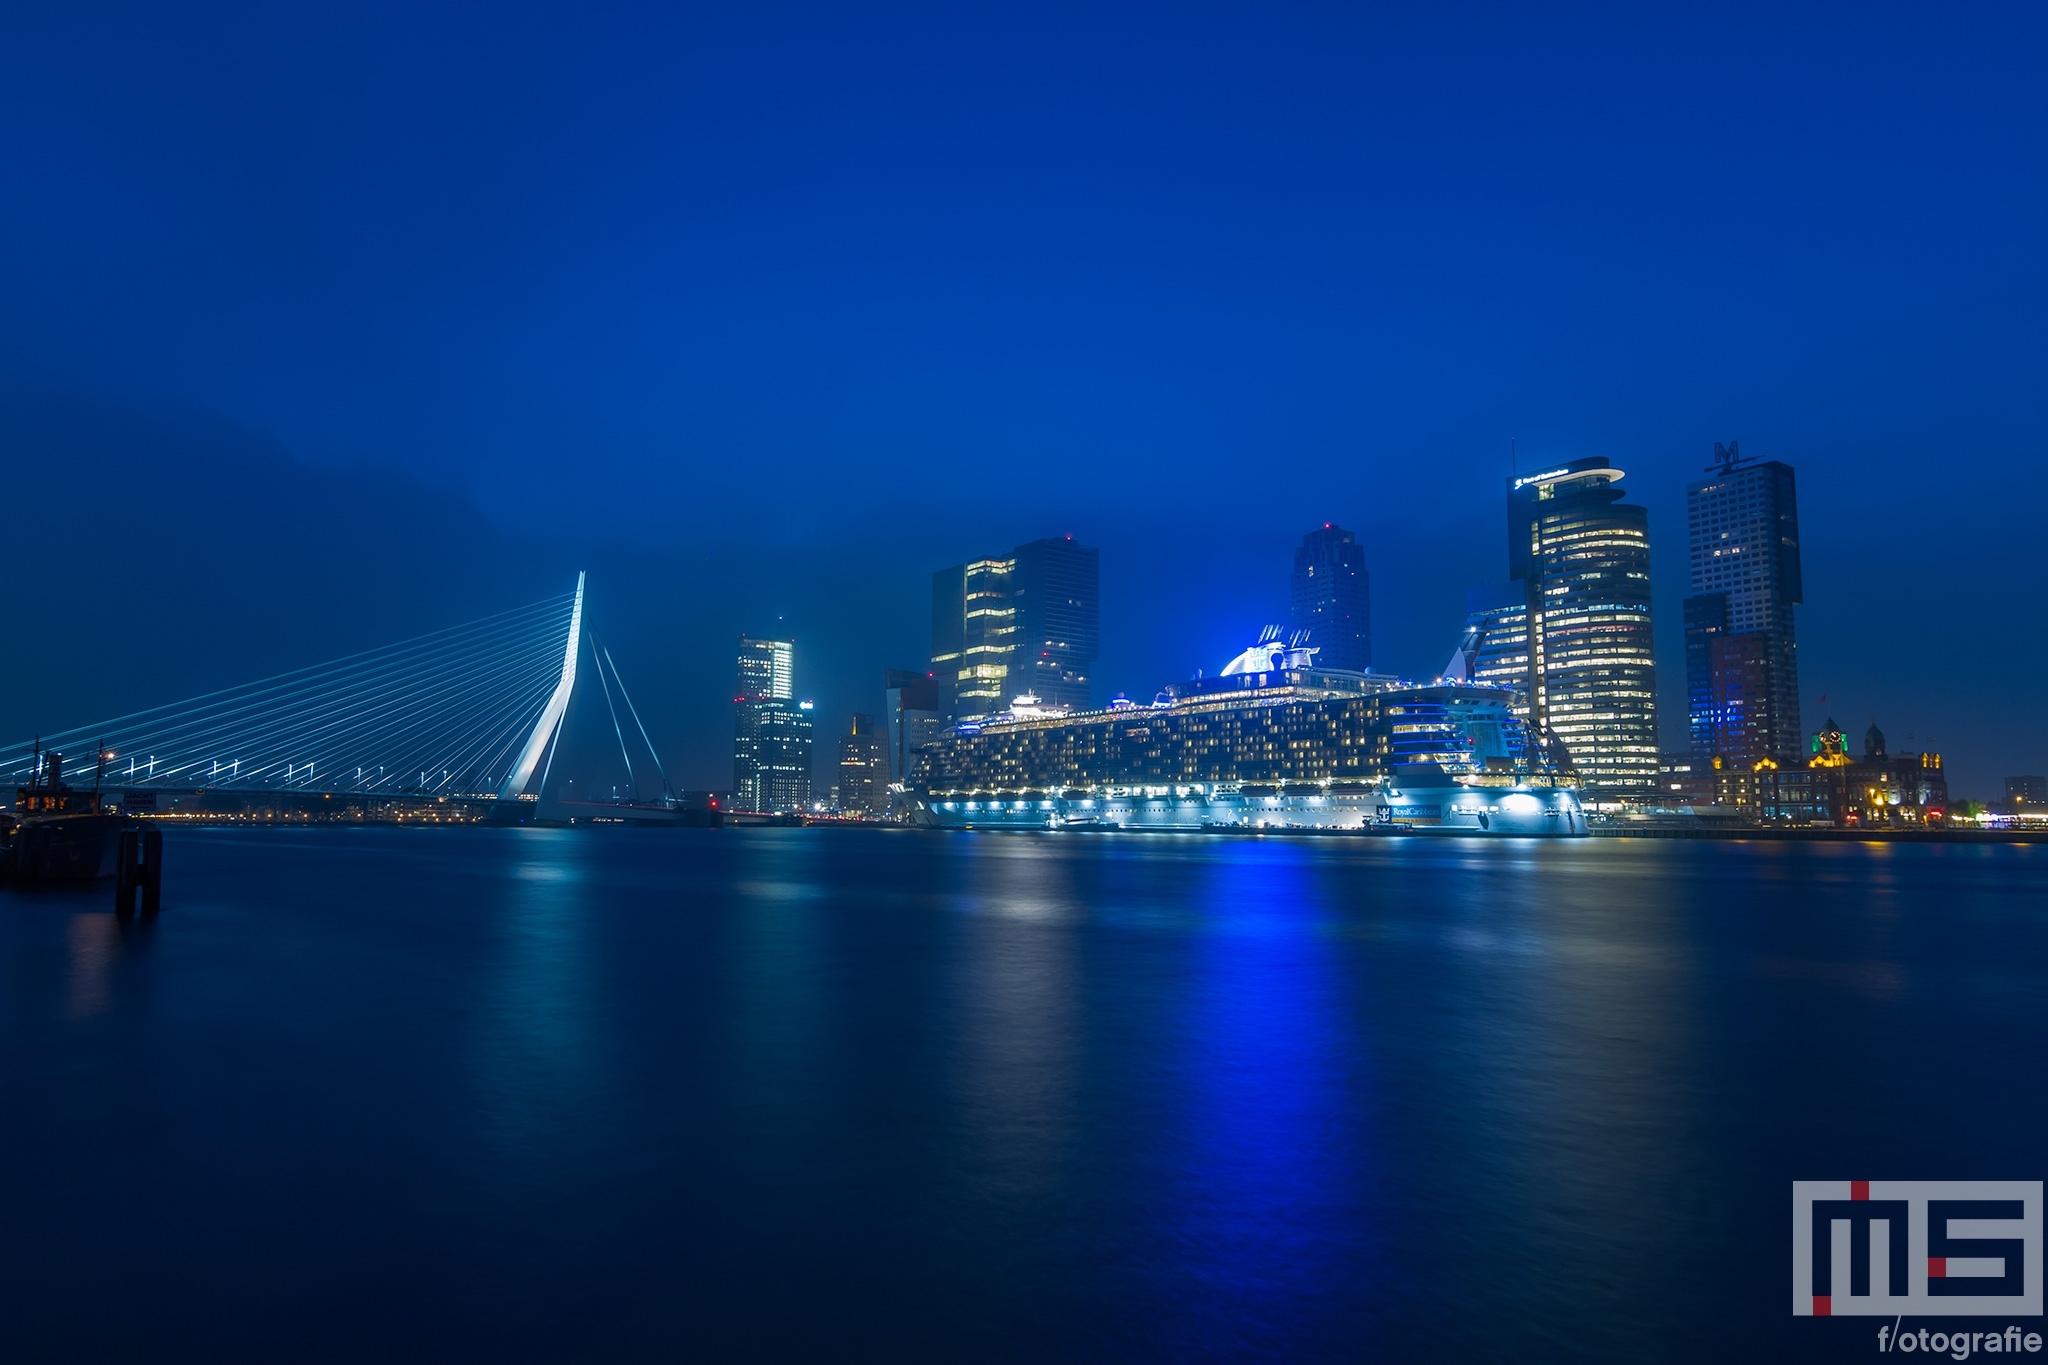 Het cruiseschip Oasis of the Seas in de nacht aan de Cruise Port Rotterdam